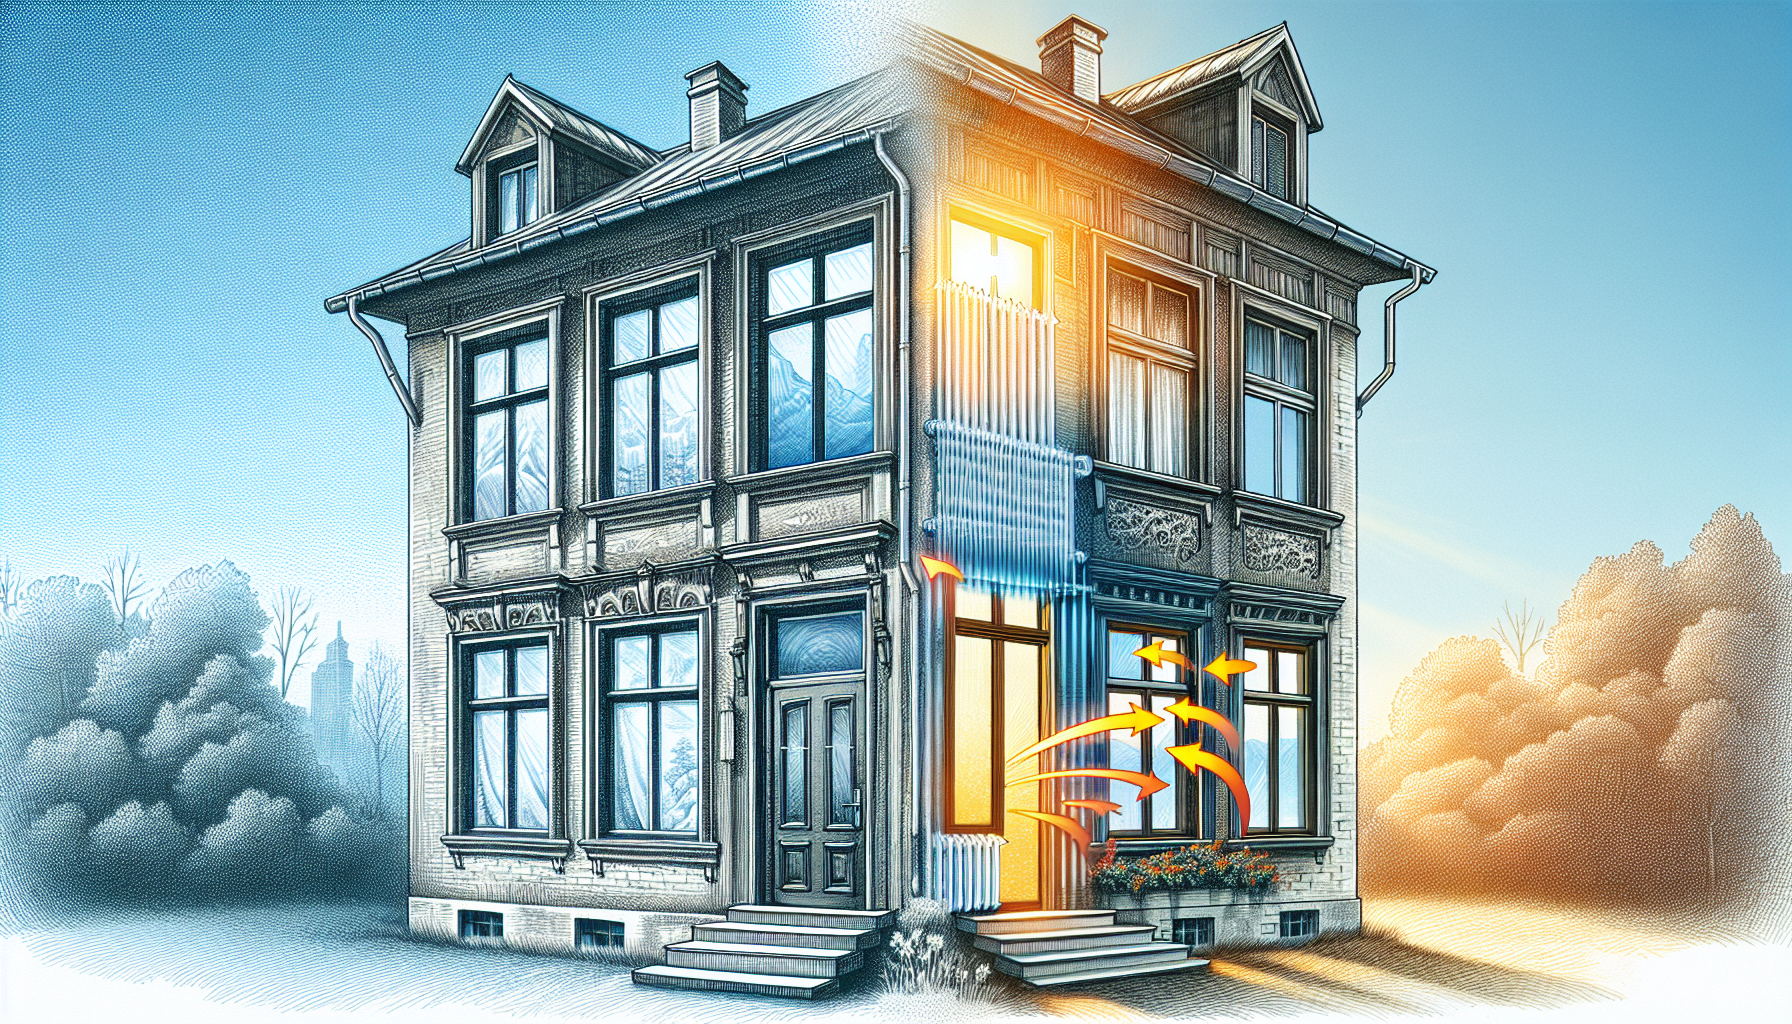 Fenstertausch. Illustration des Austauschs von alten Fenstern gegen moderne energieeffiziente Fenster in einem Mehrfamilienhaus